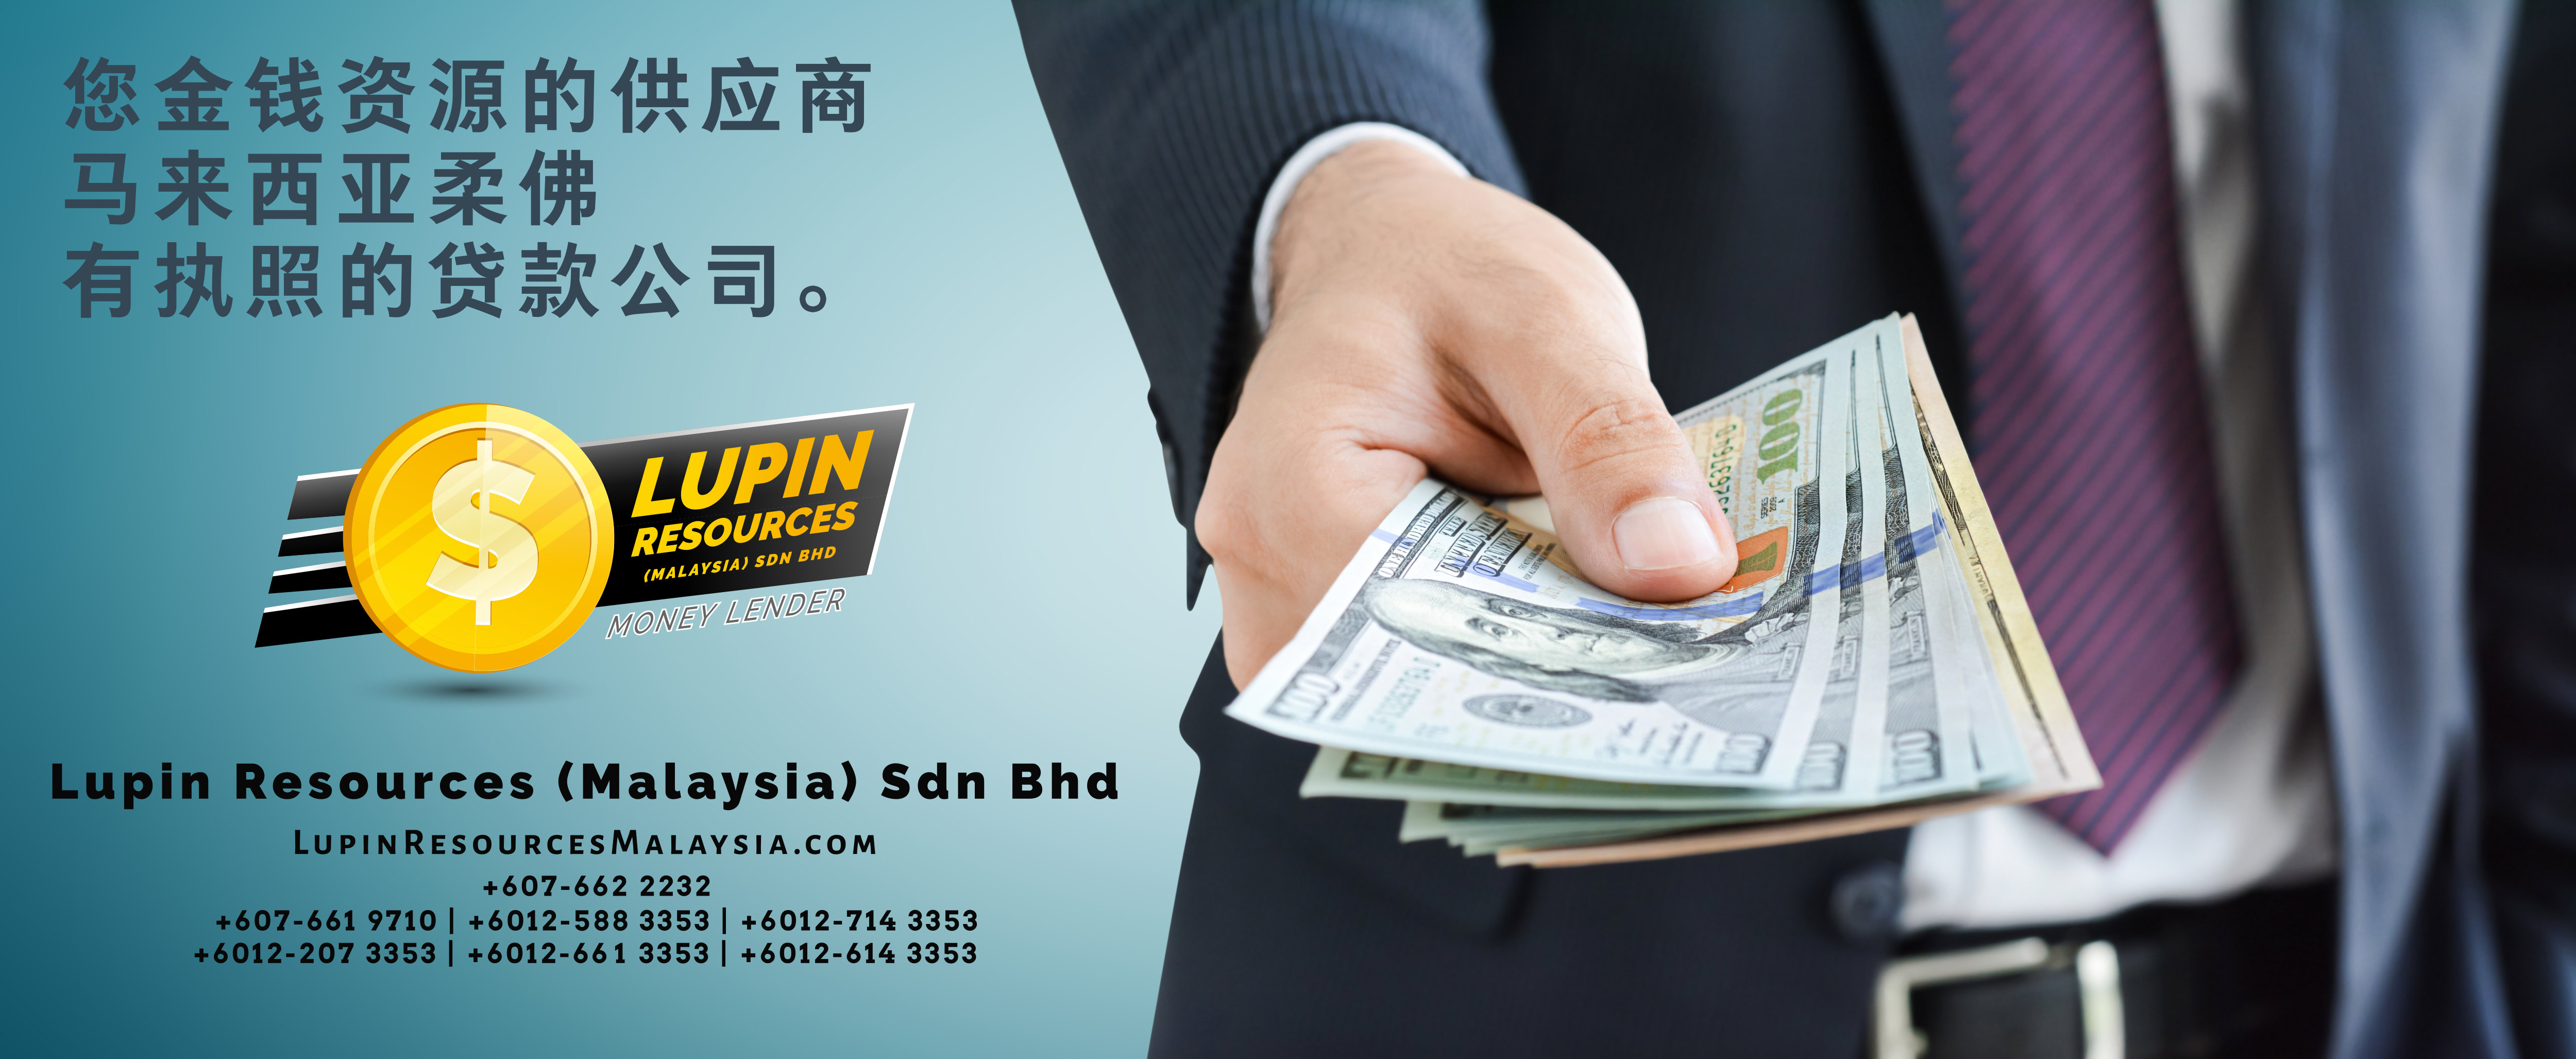 柔佛有执照的贷款公司 Lupin Resources Malaysia SDN BHD 您金钱资源的供应商 古来 柔佛 马来西亚 个人贷款 商业贷款 低利息抵押代款 经济 A01-40